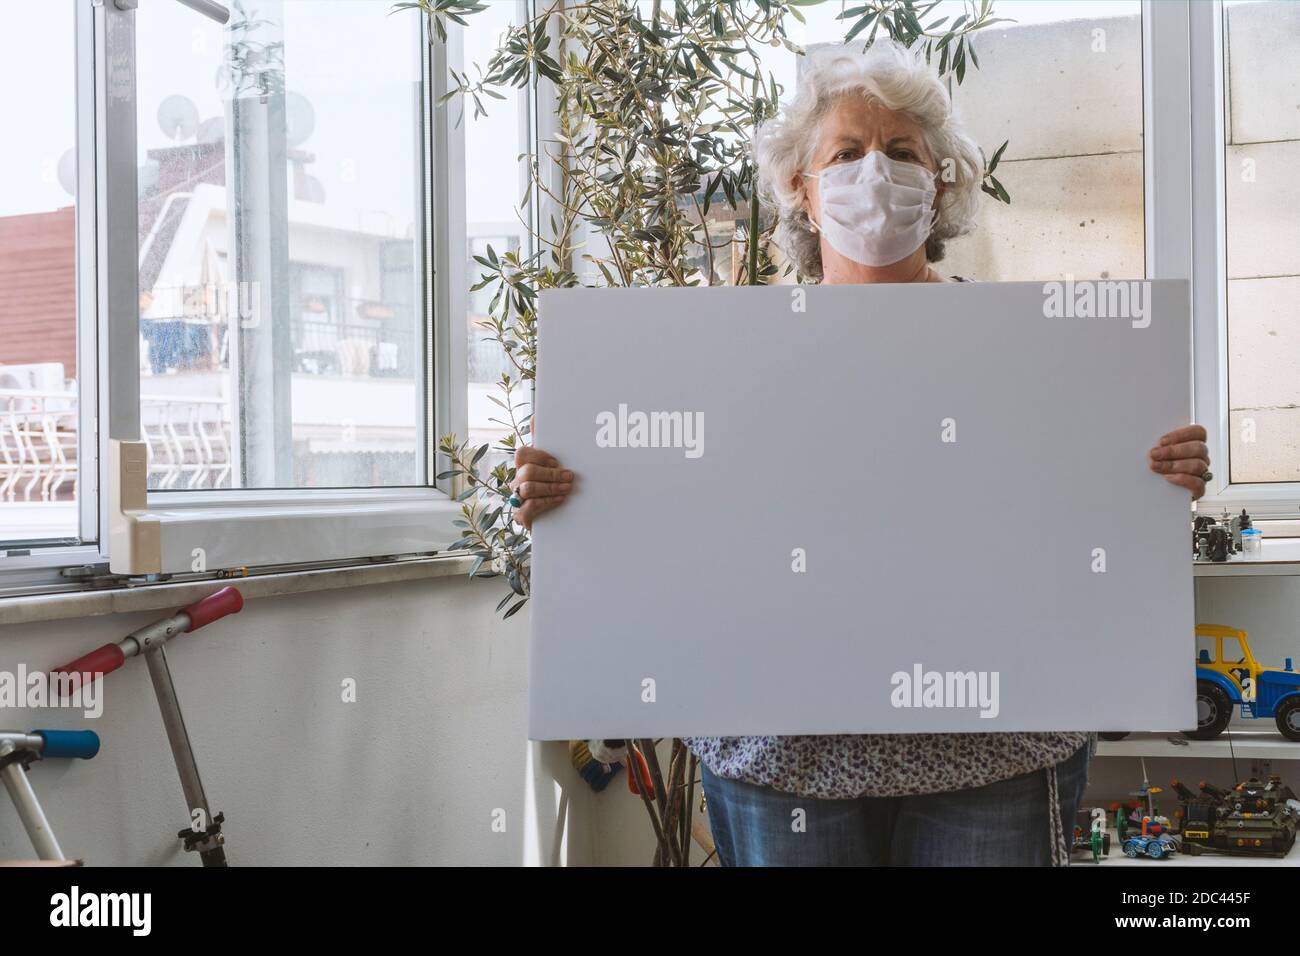 Covid-19 concetto di soggiorno a casa: Una donna anziana con i capelli grigi indossa una maschera facciale e tiene una lavagna bianca vuota senza un messaggio. È in piedi Foto Stock